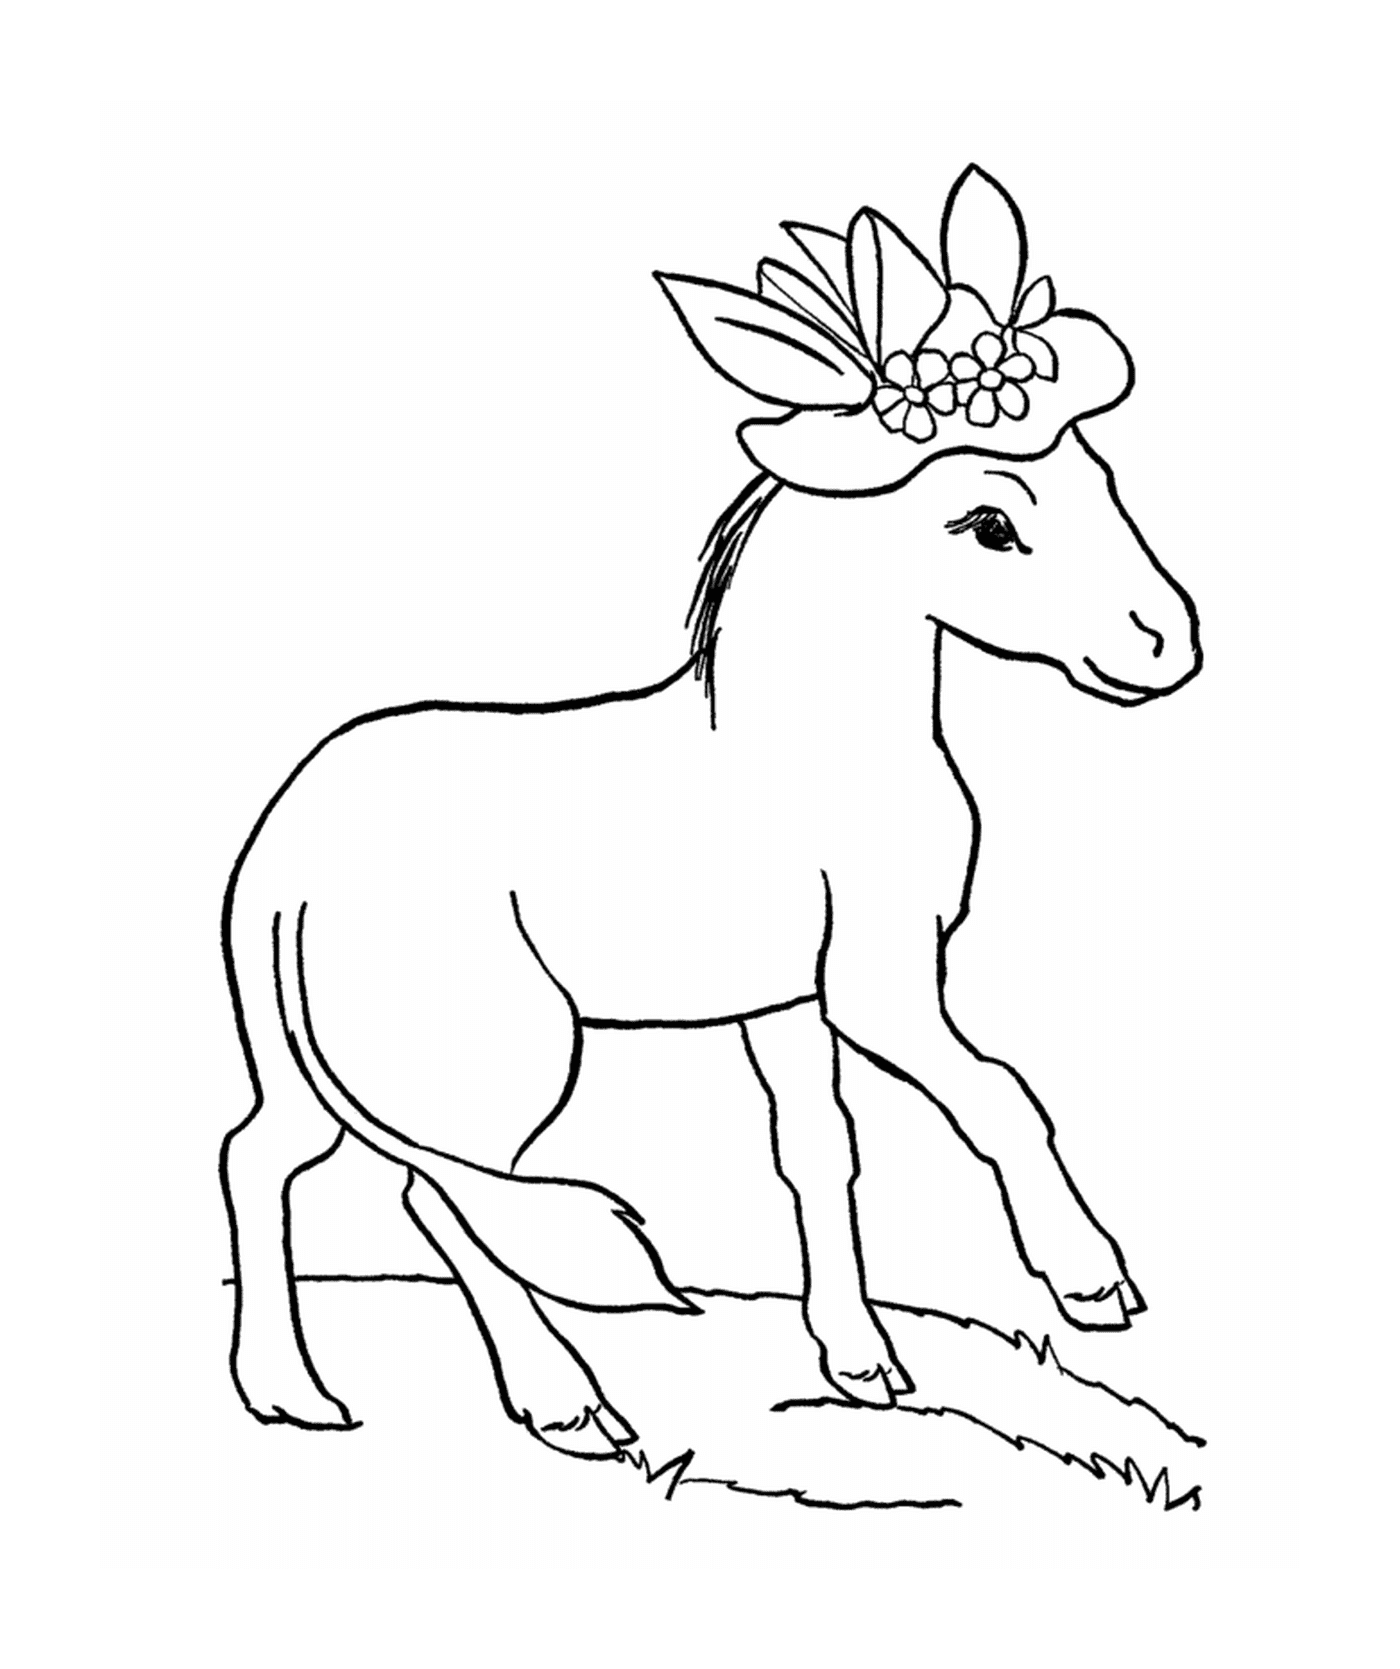  Лошадь с цветком на голове 